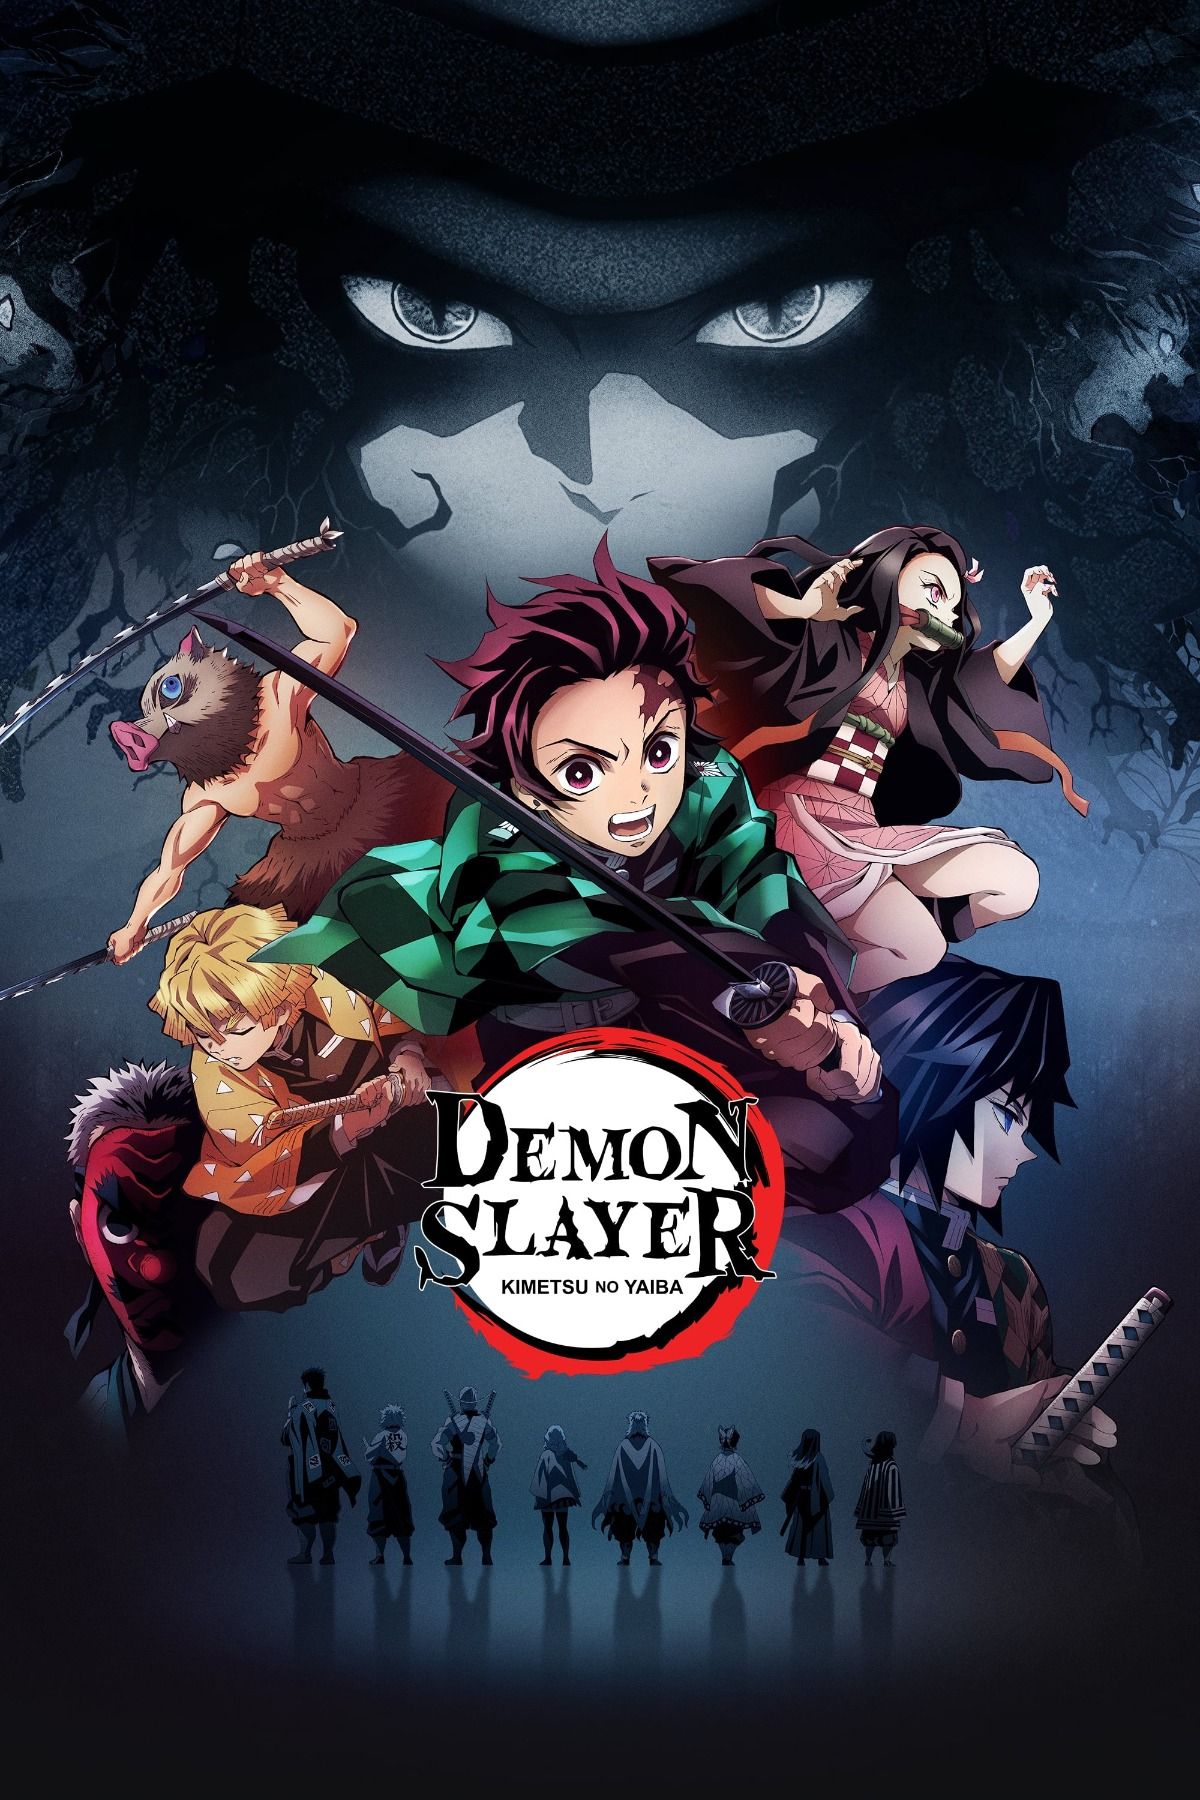 Tanjiro y el resto de personajes se dirigen a la batalla en el póster del anime Demon Slayer